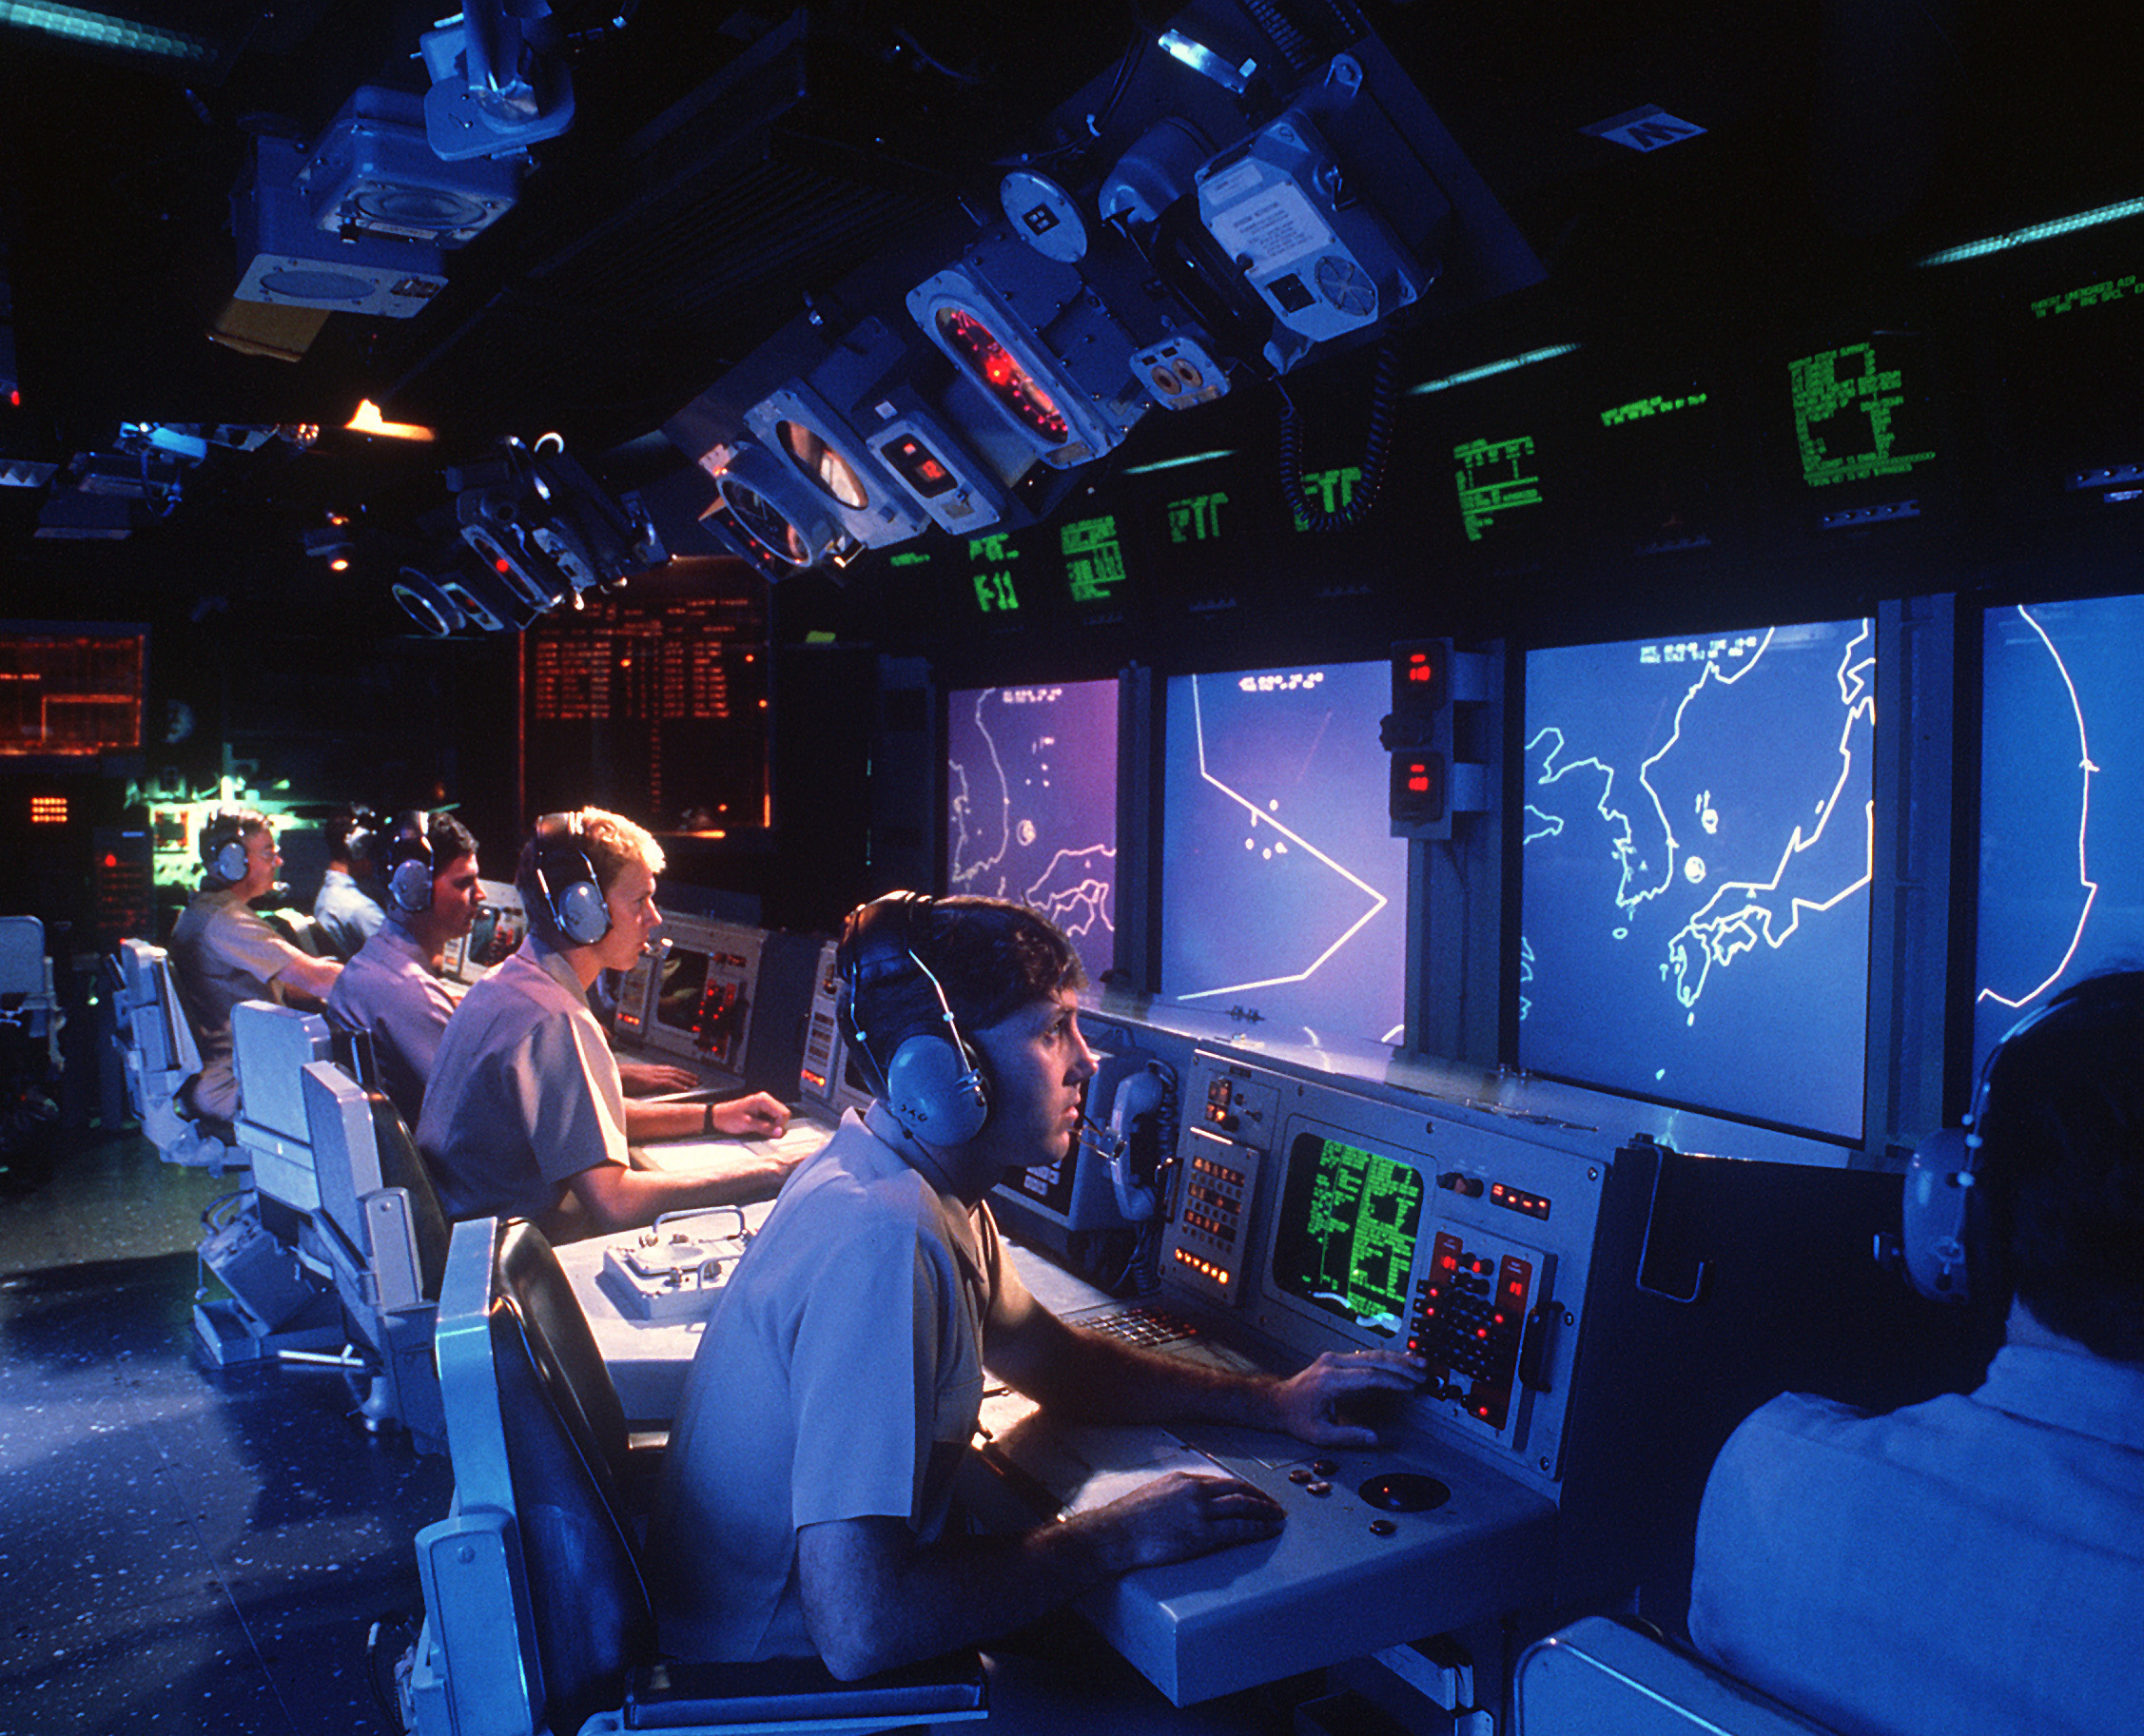 USS_Vincennes_CG-49_Aegis_large_screen_displays.jpg